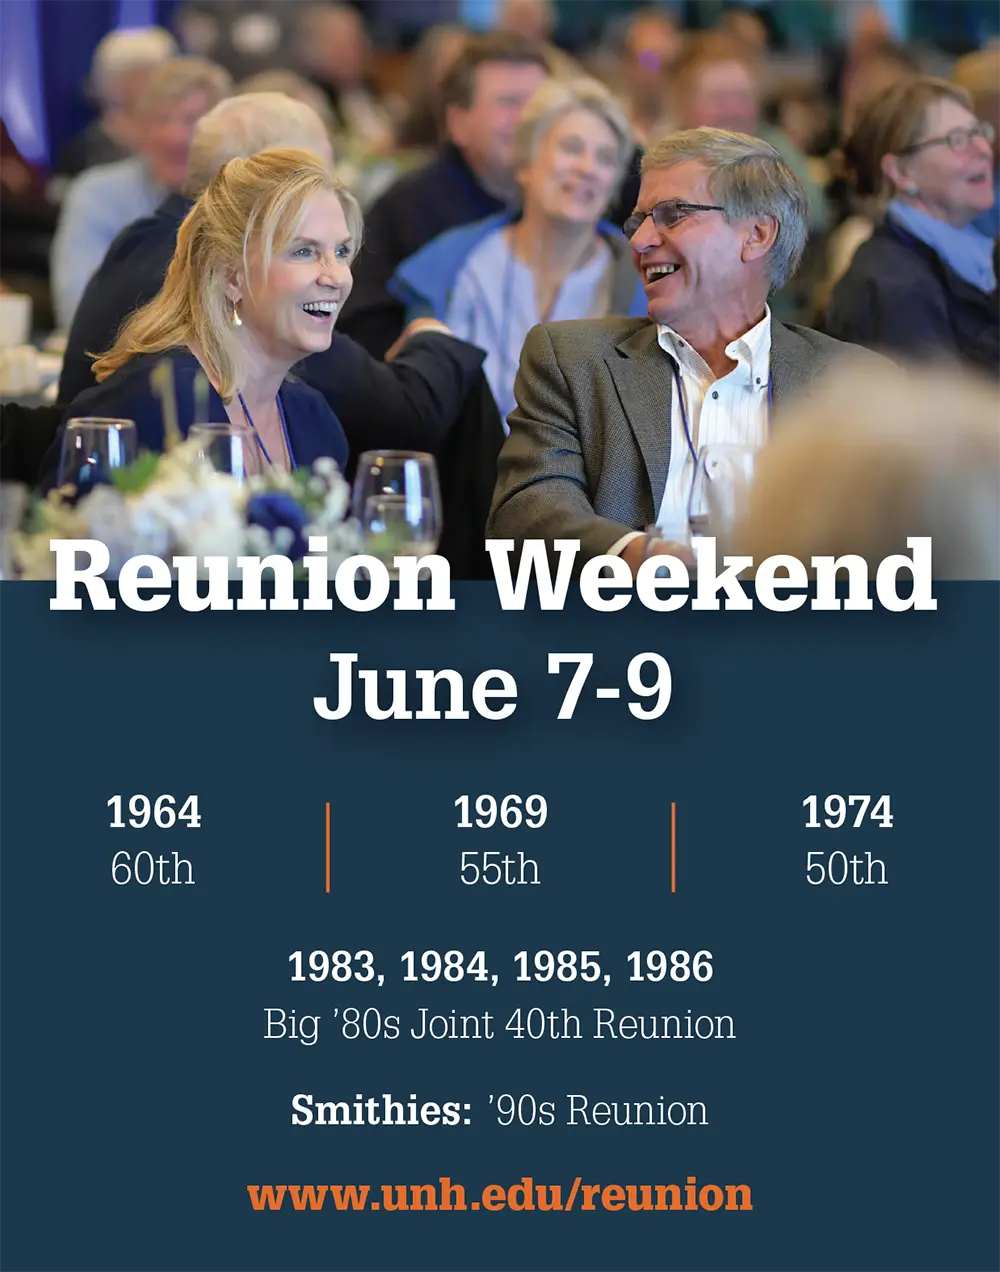 UNH Reunion Weekend Advertisement